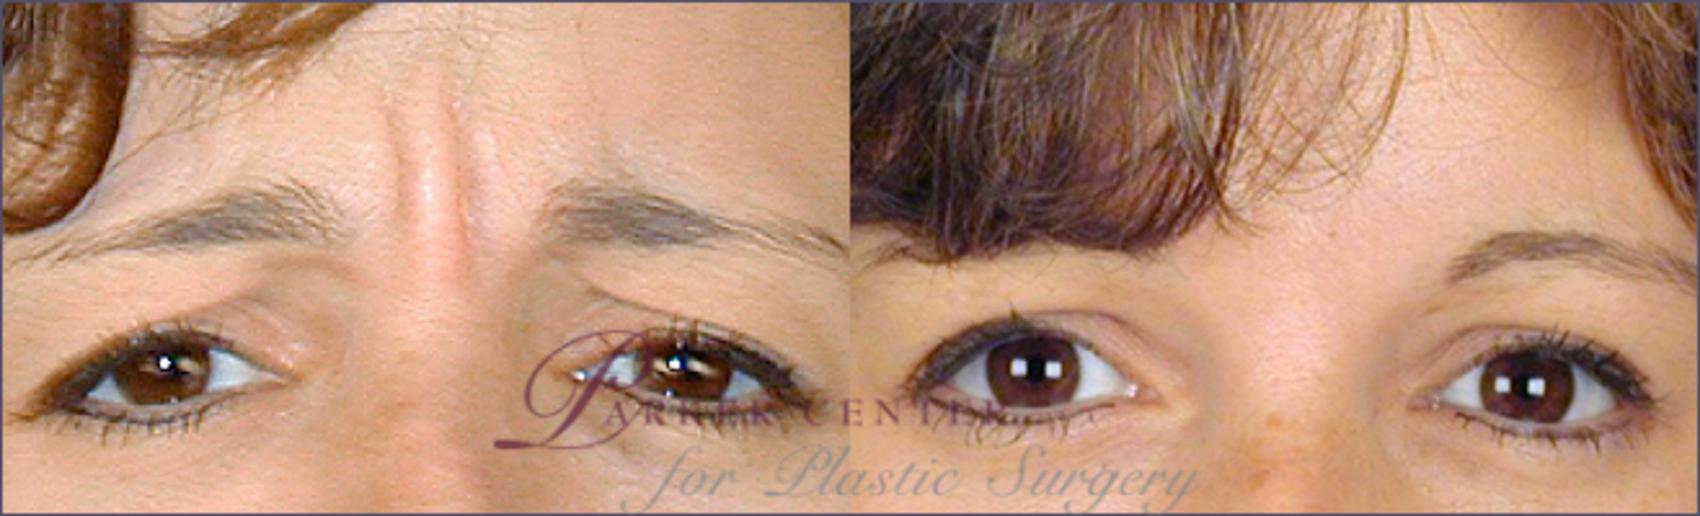 BOTOX® & Jeuveau® Case 268 Before & After View #1 | Paramus, NJ | Parker Center for Plastic Surgery